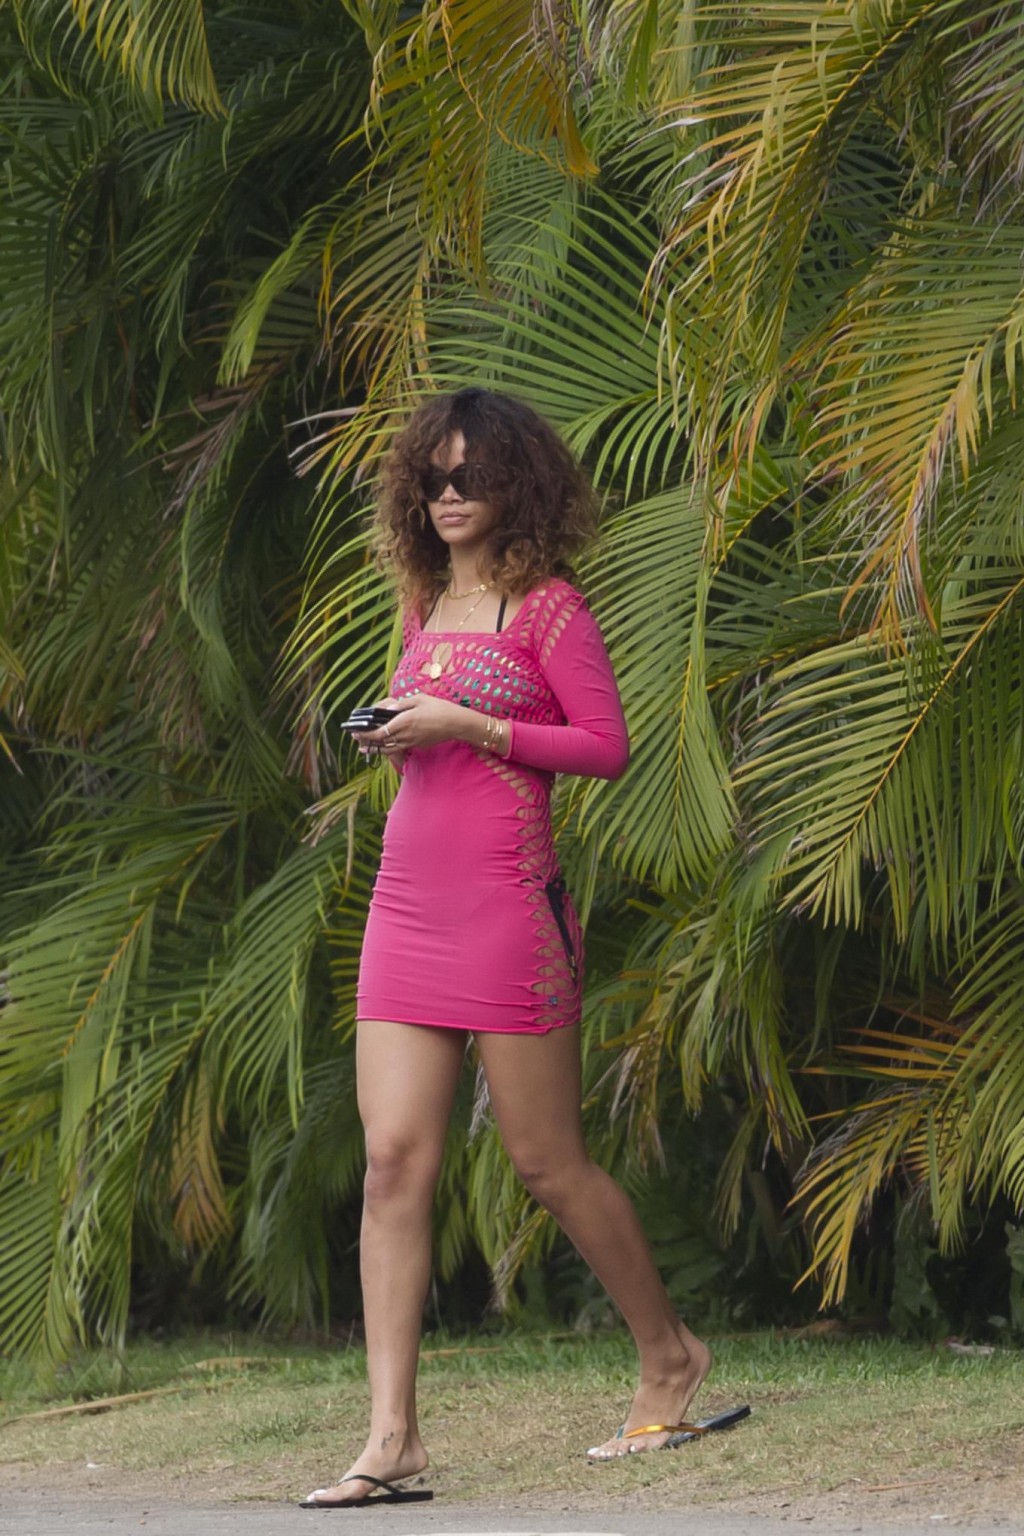 Rihanna in bikini  see through dress taking a beach walk in Hawaii #75276532